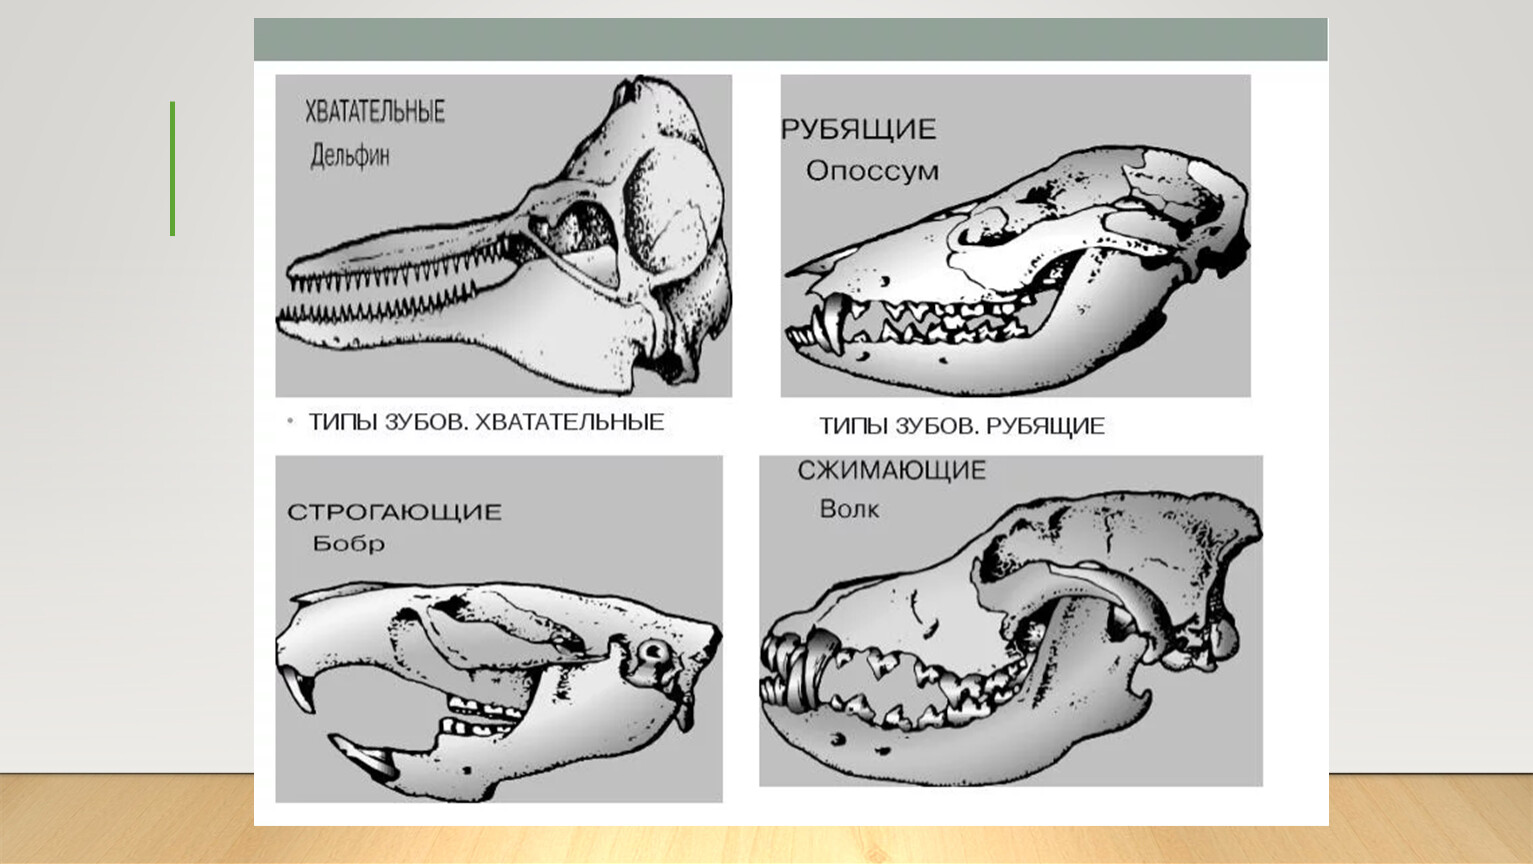 Какие зубы у млекопитающих дифференцированы. Зубная система млекопитающих анатомия. Строение зубов млекопитающих зубная система. Зубные системы животных разных отрядов млекопитающих. Зубная система насекомоядных млекопитающих.